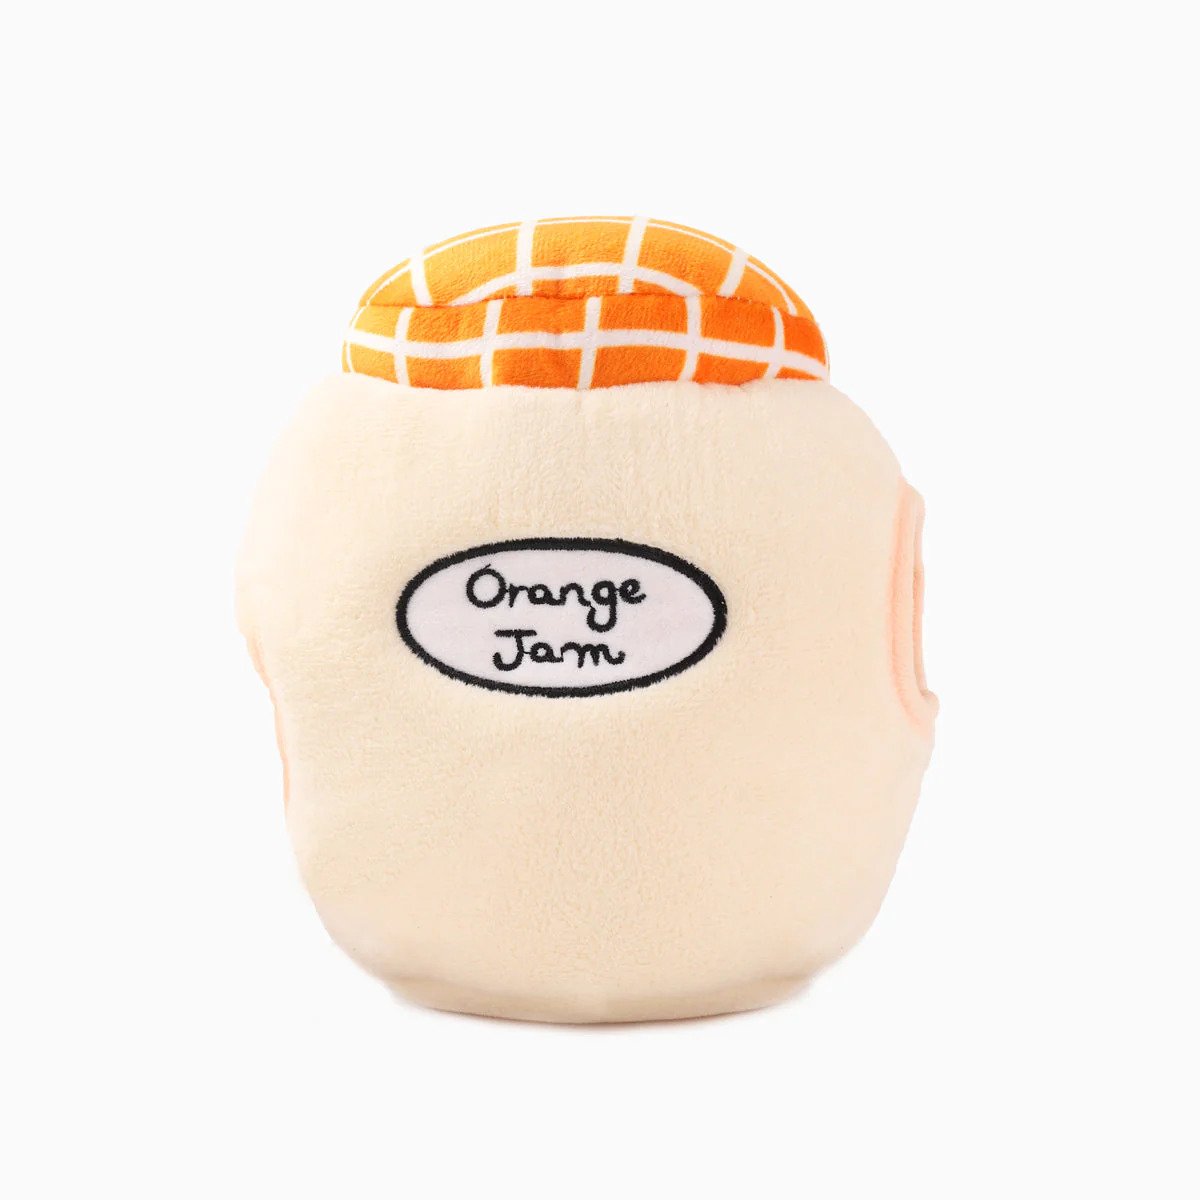 Food Party - Orange Jam Dog Plush Toy